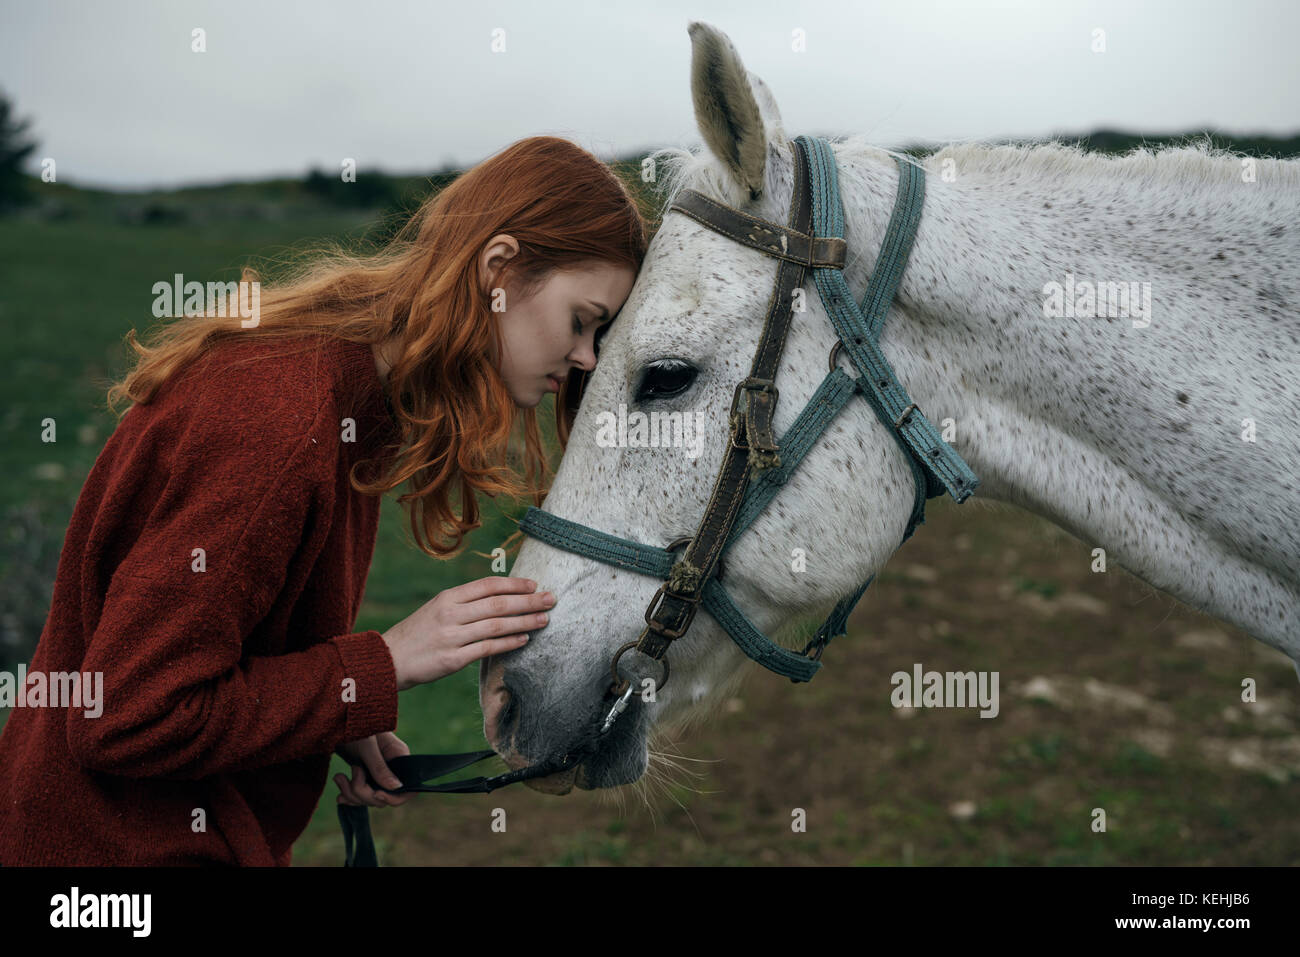 Caucasian woman petting horse Stock Photo